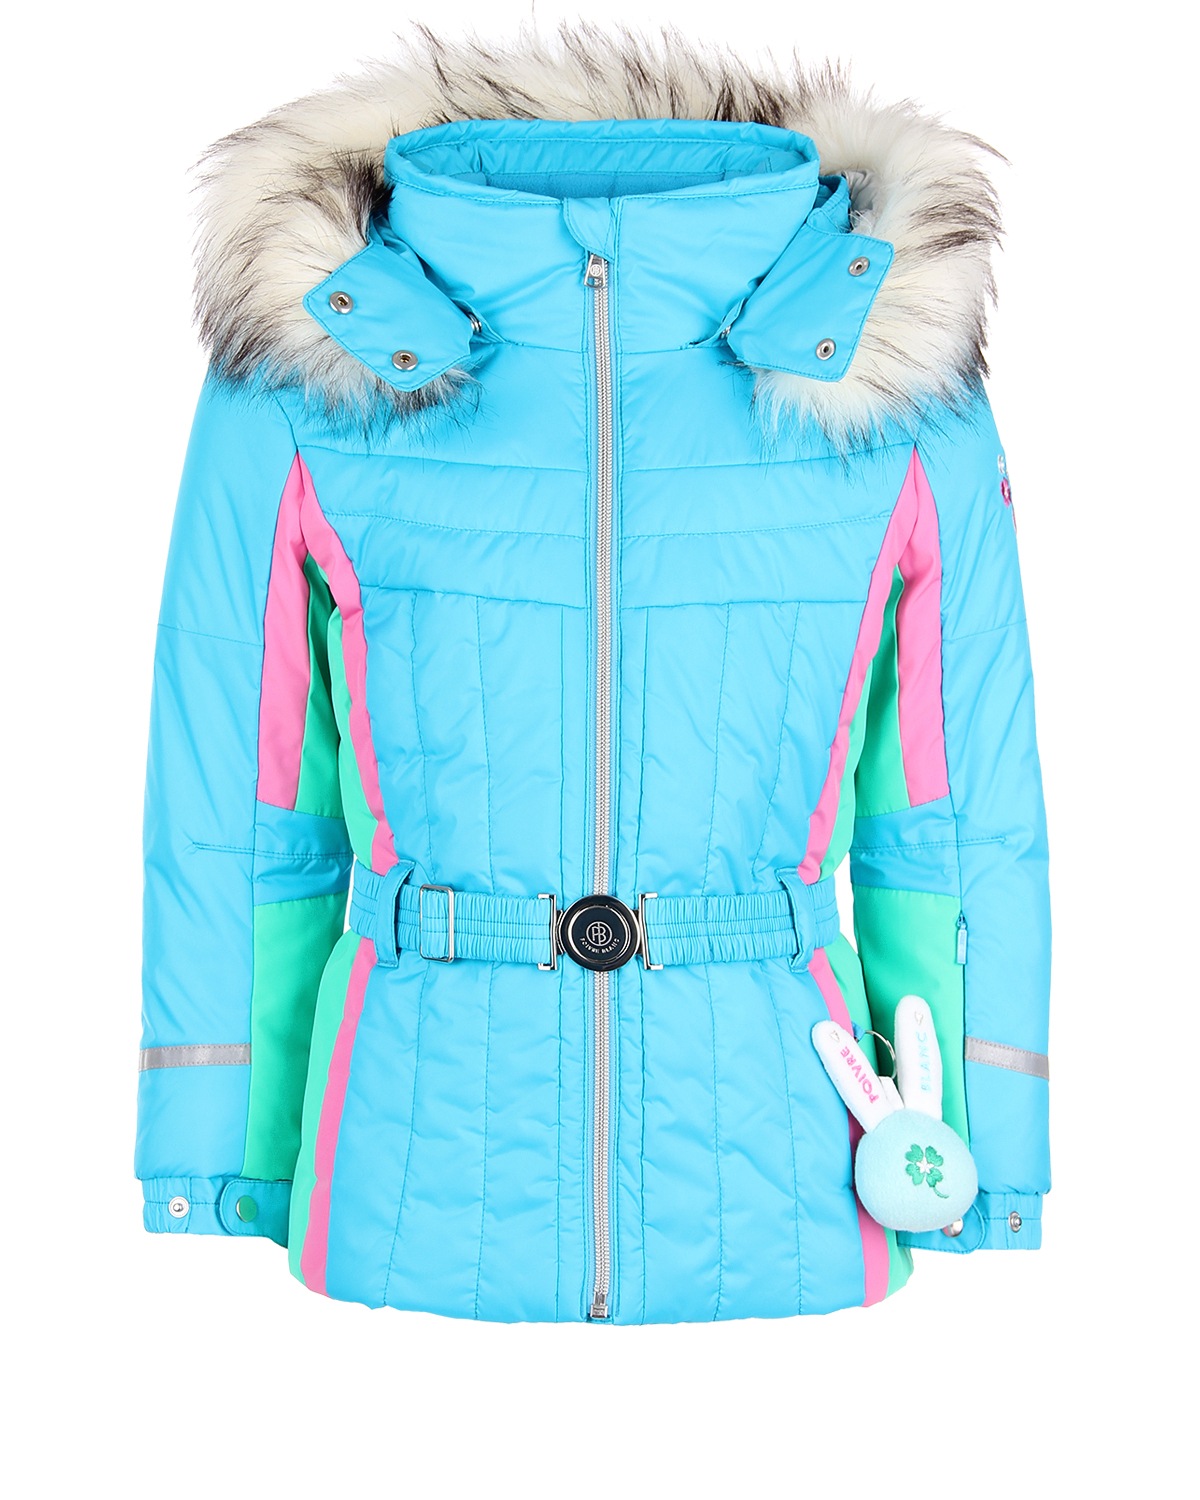 Комплект, куртка и полукомбиезон, голубой с вышивкой Poivre Blanc детский - фото 2